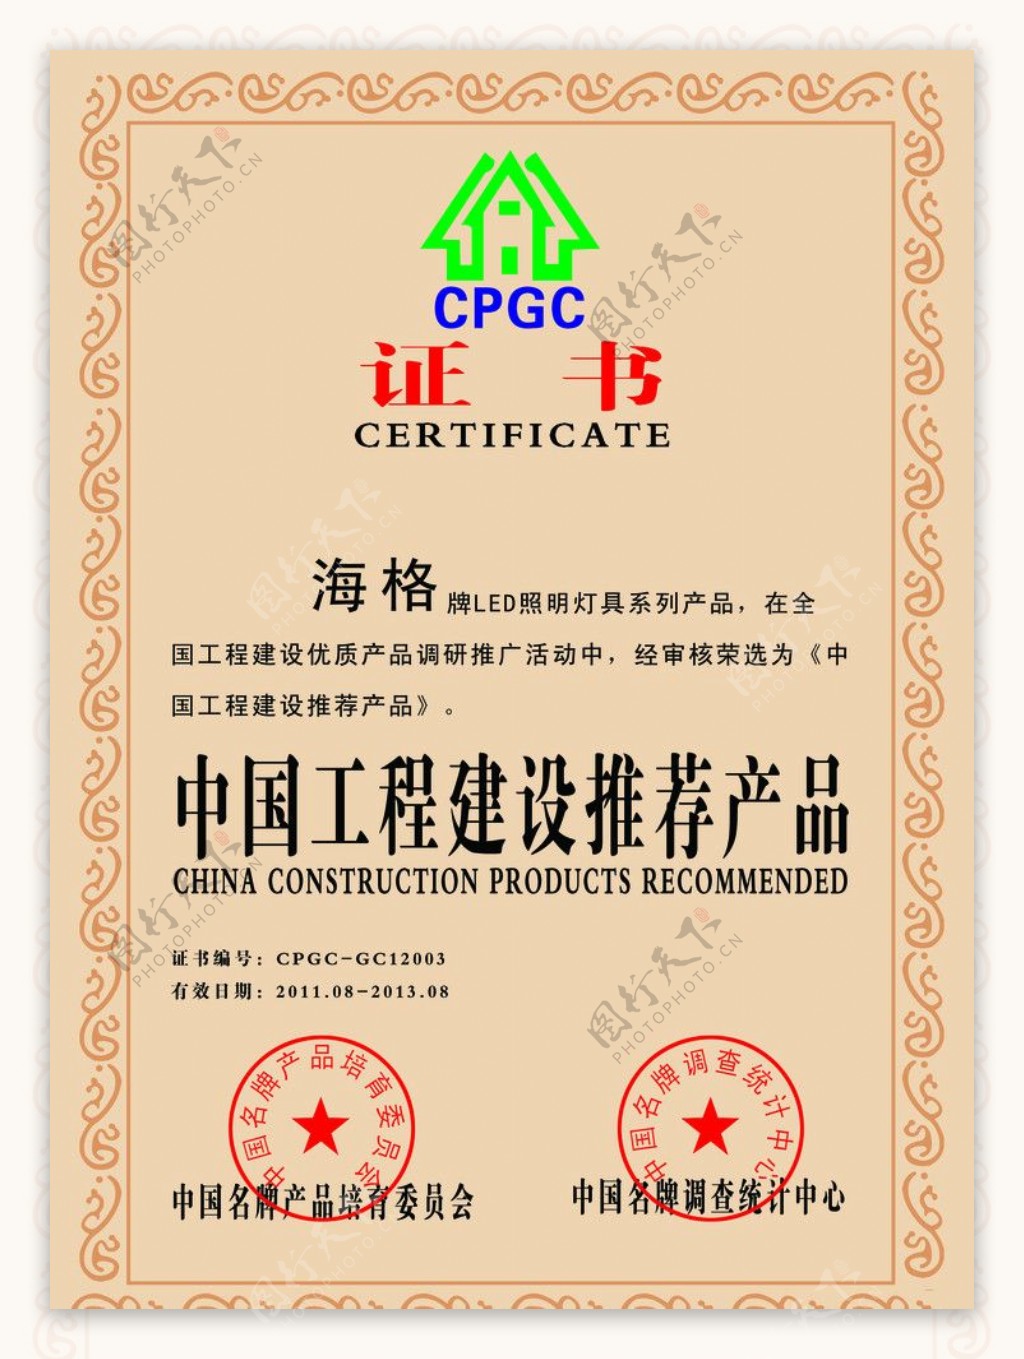 中国工程建设推荐产品证书图片